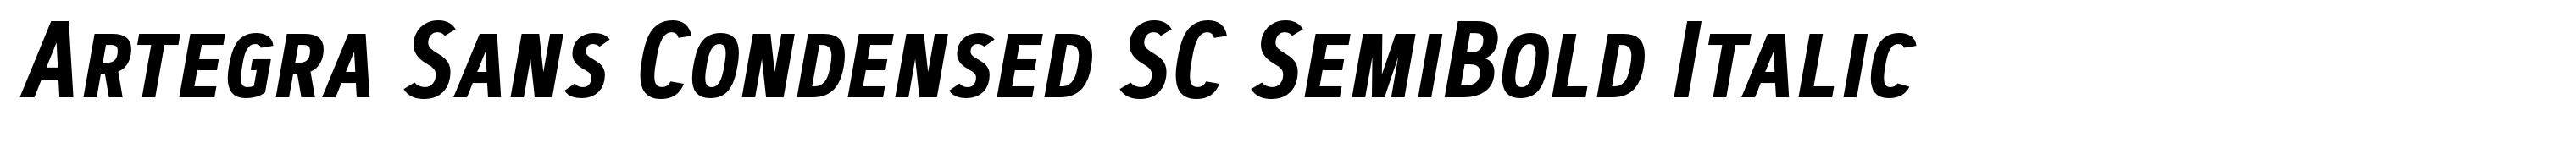 Artegra Sans Condensed SC SemiBold Italic